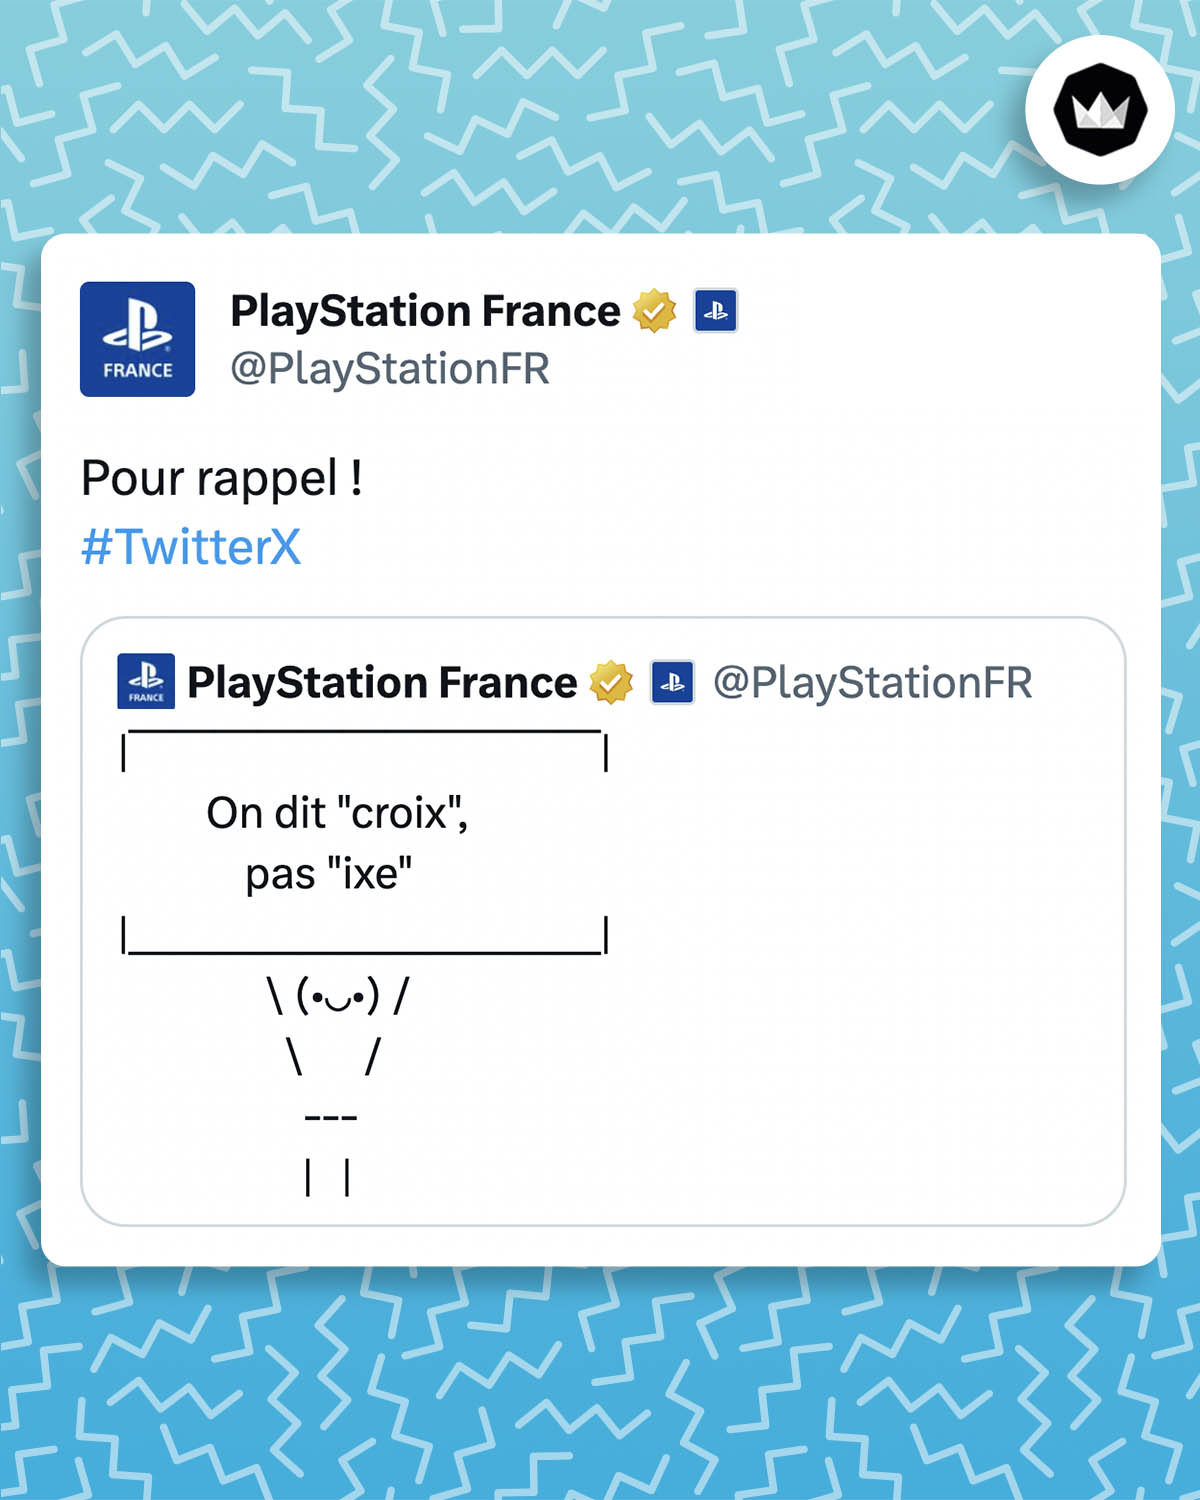 Tweet de PlayStation France : 

"Pour rappel ! #TwitterX

La marque répond à son propre tweet : 
On dit "croix", pas "ixe".